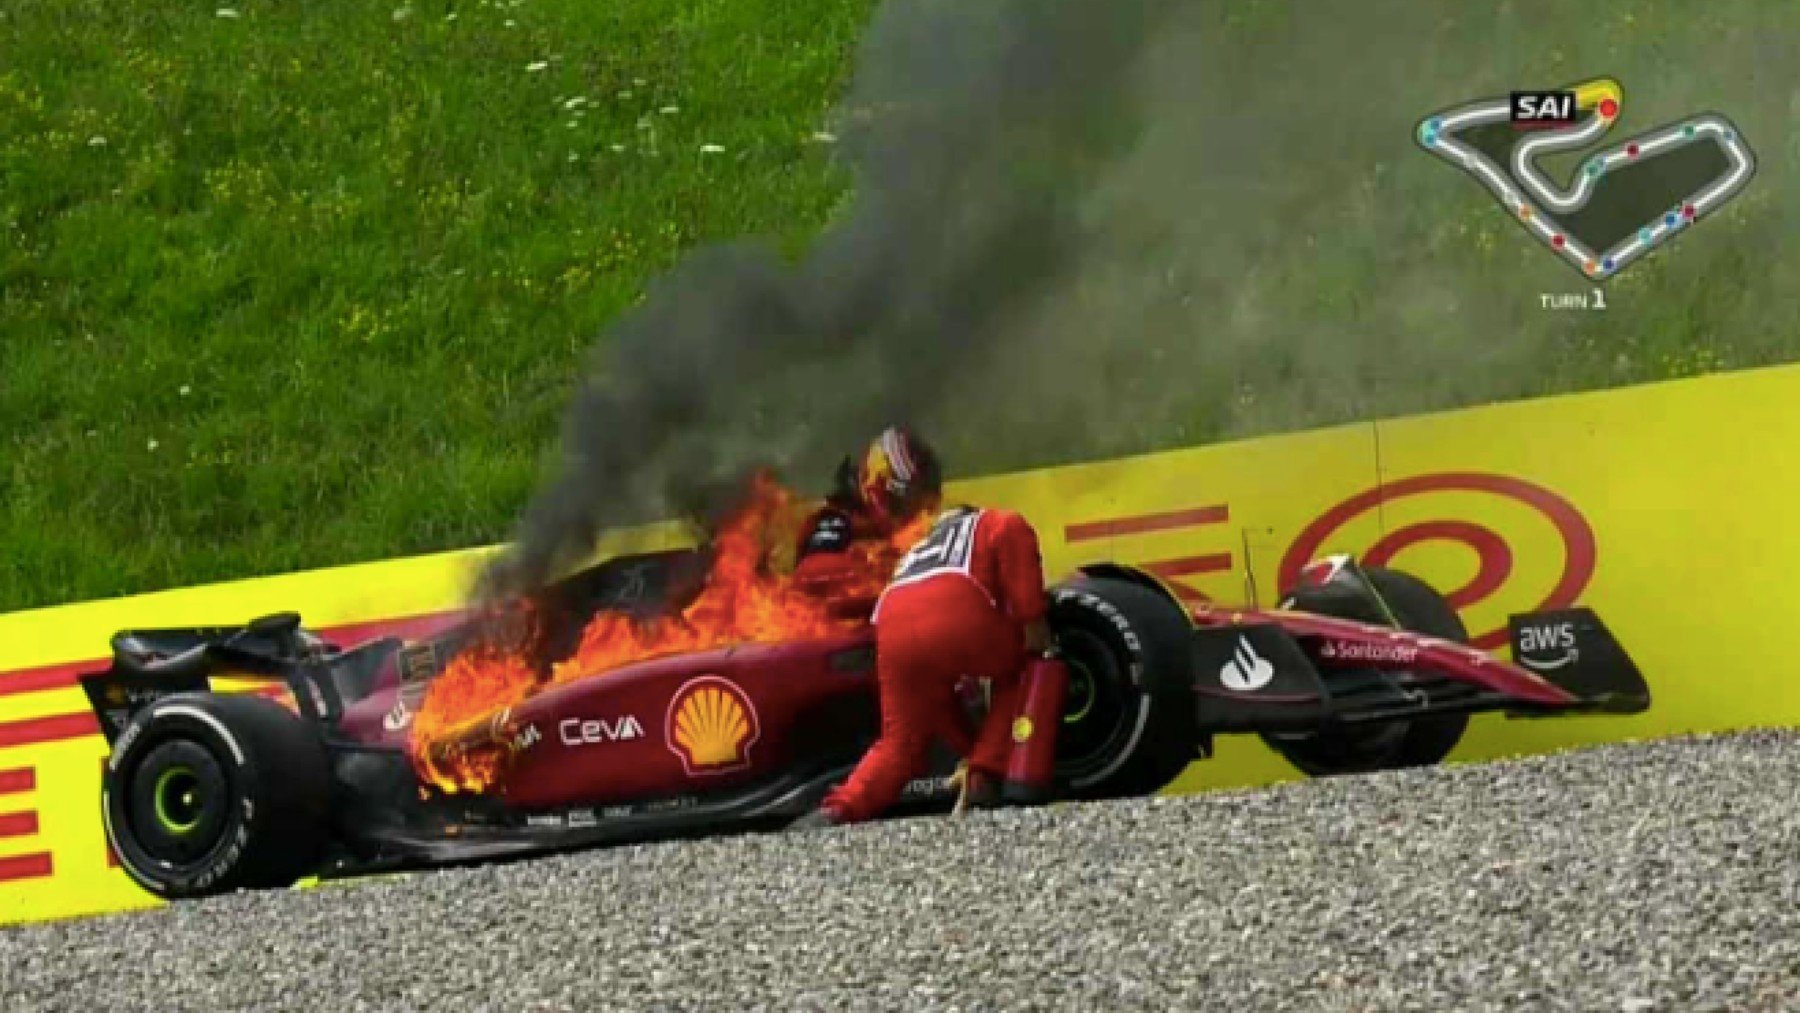 El coche de Sainz, ardiendo.